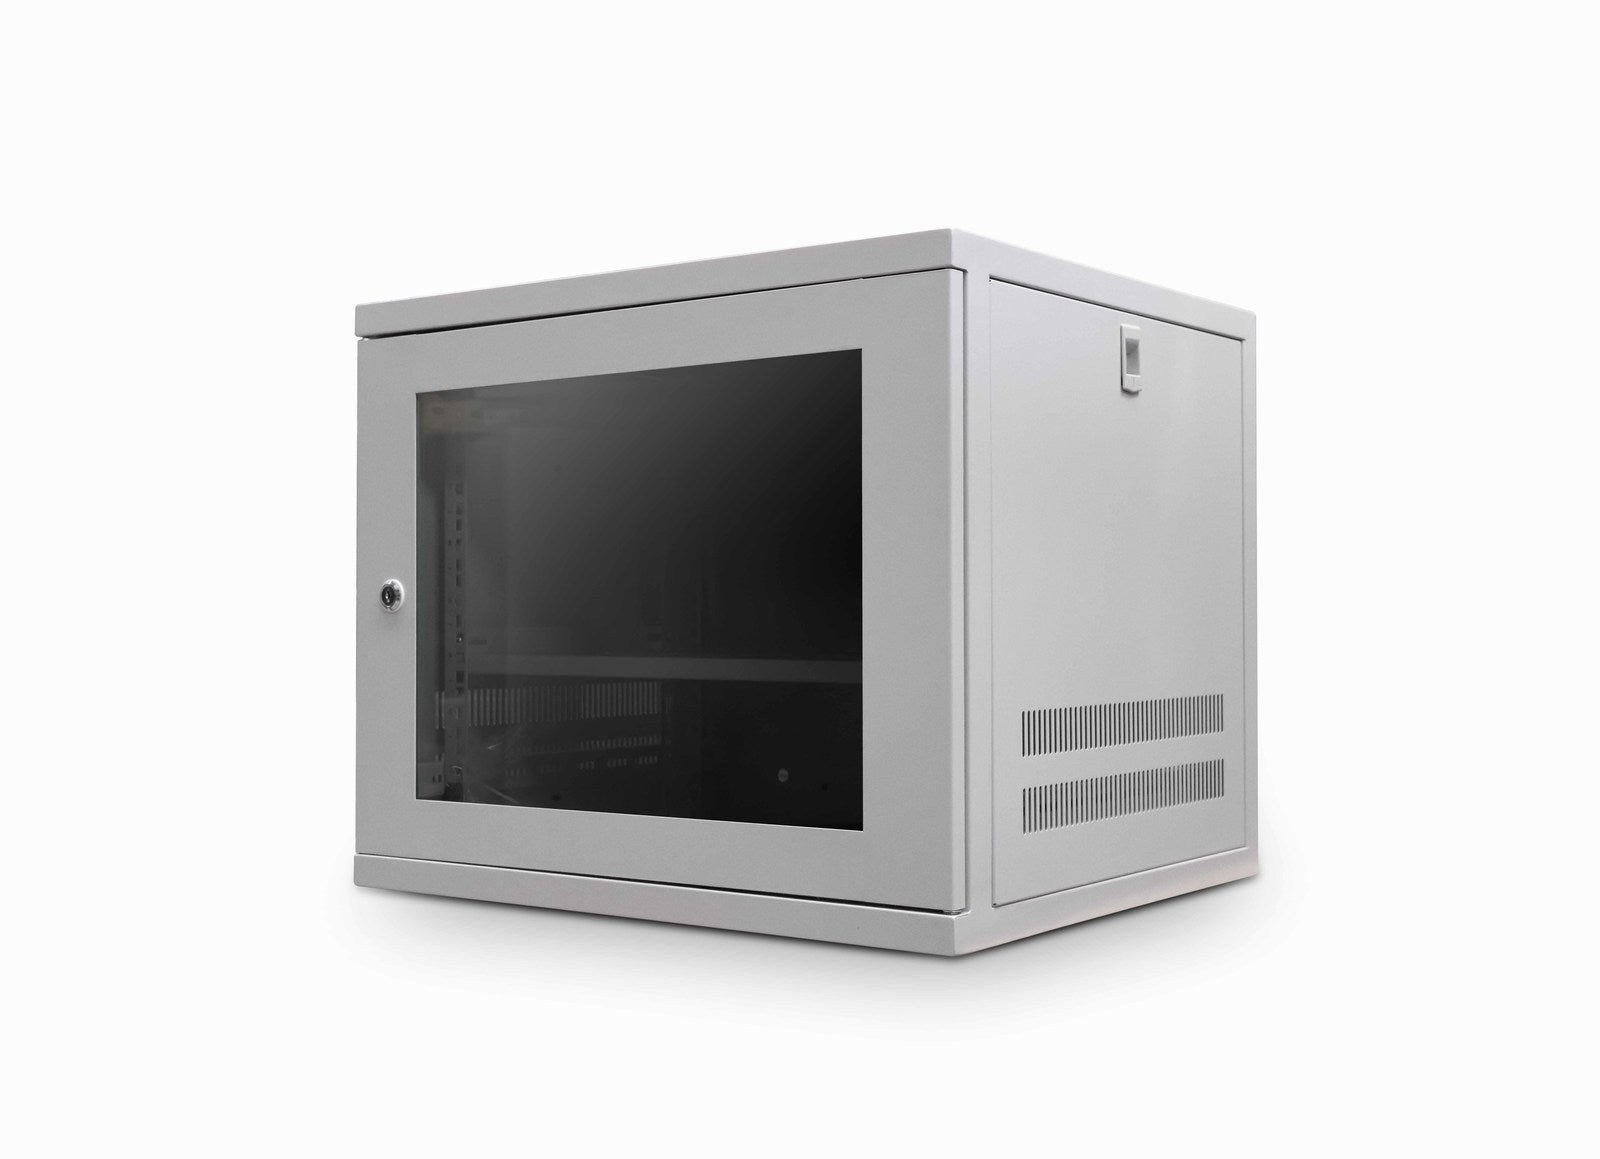 9u 550mm Deep Wall Data Cabinet - Grey